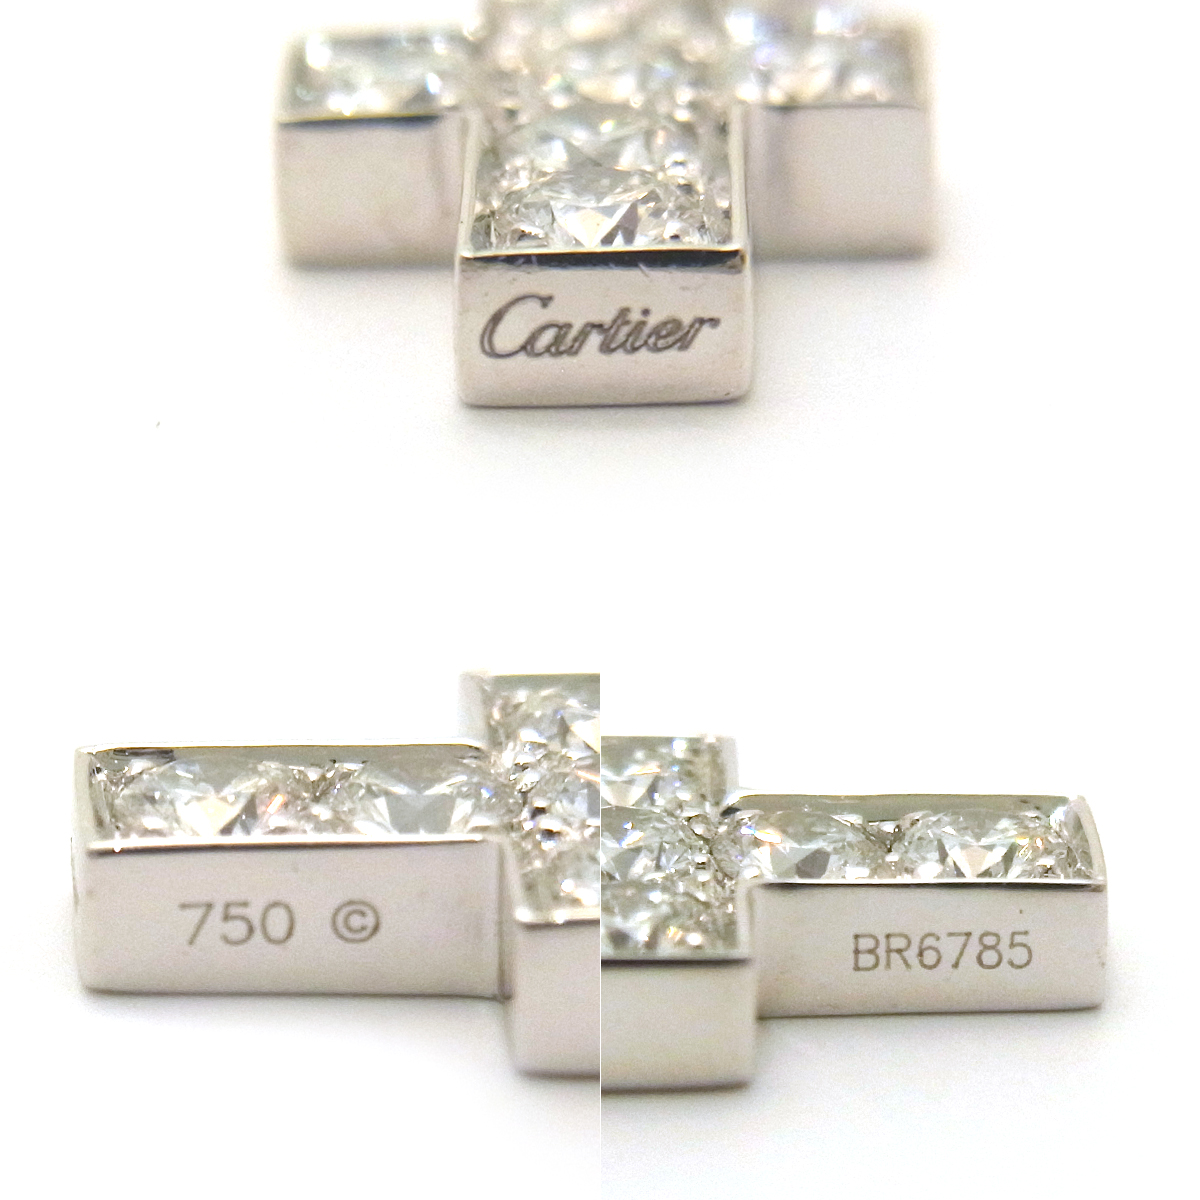 カルティエ(Cartier)ダイヤモンドクロスチャーム BR6785  シルバーカラー